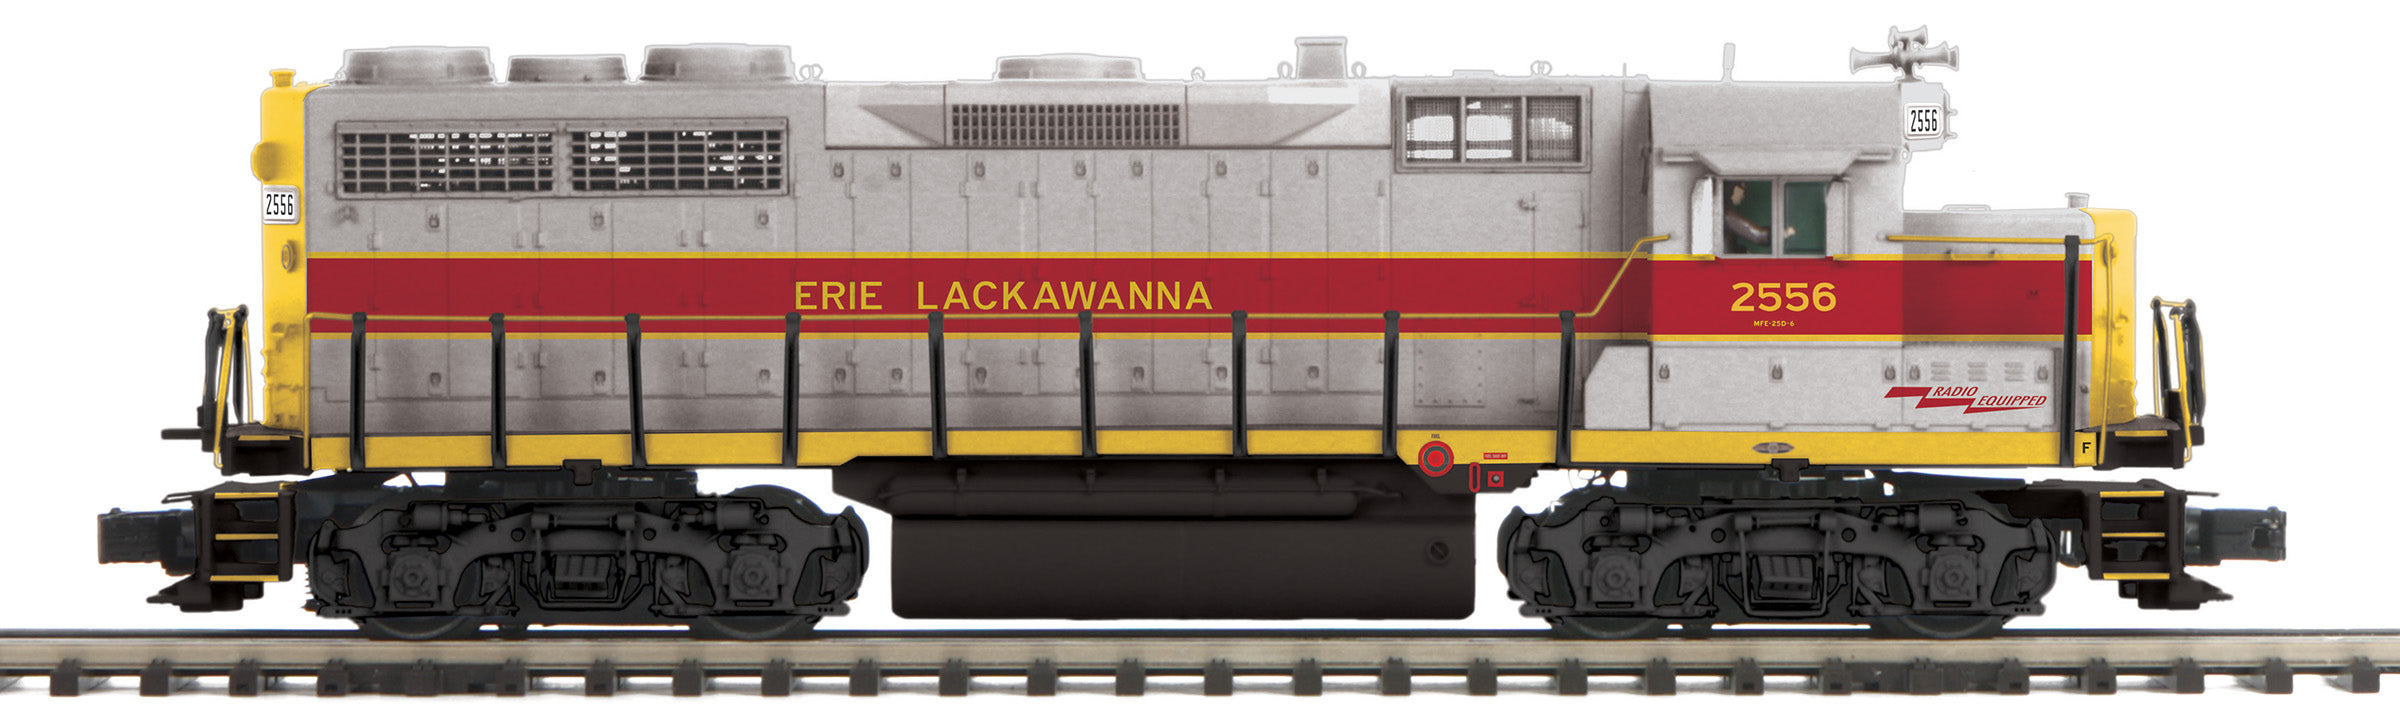 MTH 20-21553-1 - GP-35 Diesel Engine "Erie Lackawanna" #2556 w/ PS3